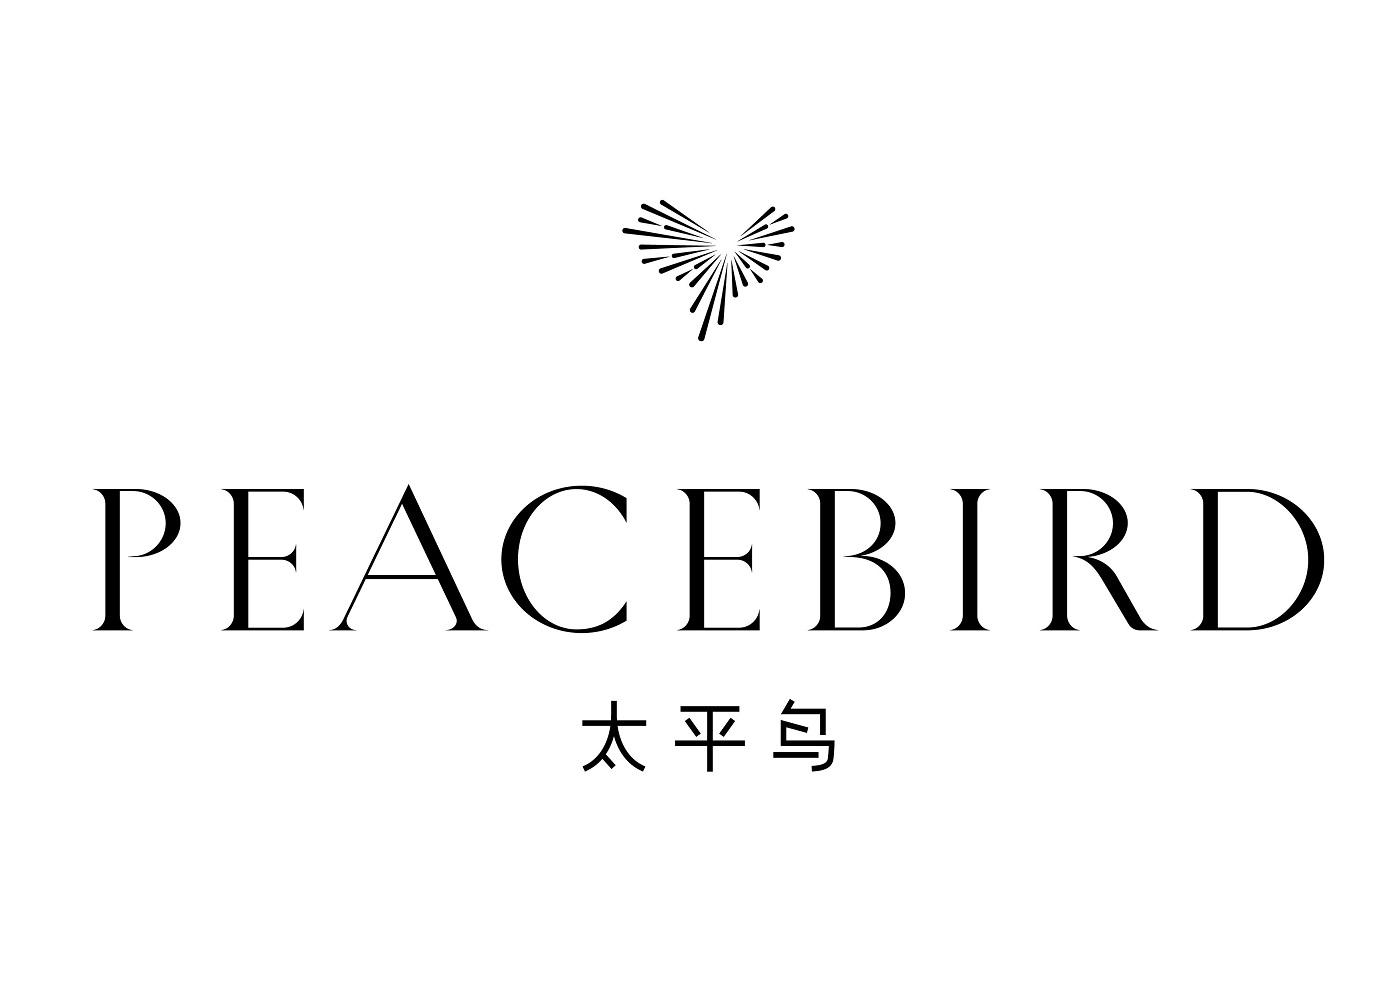 太平鸟logo清晰图片